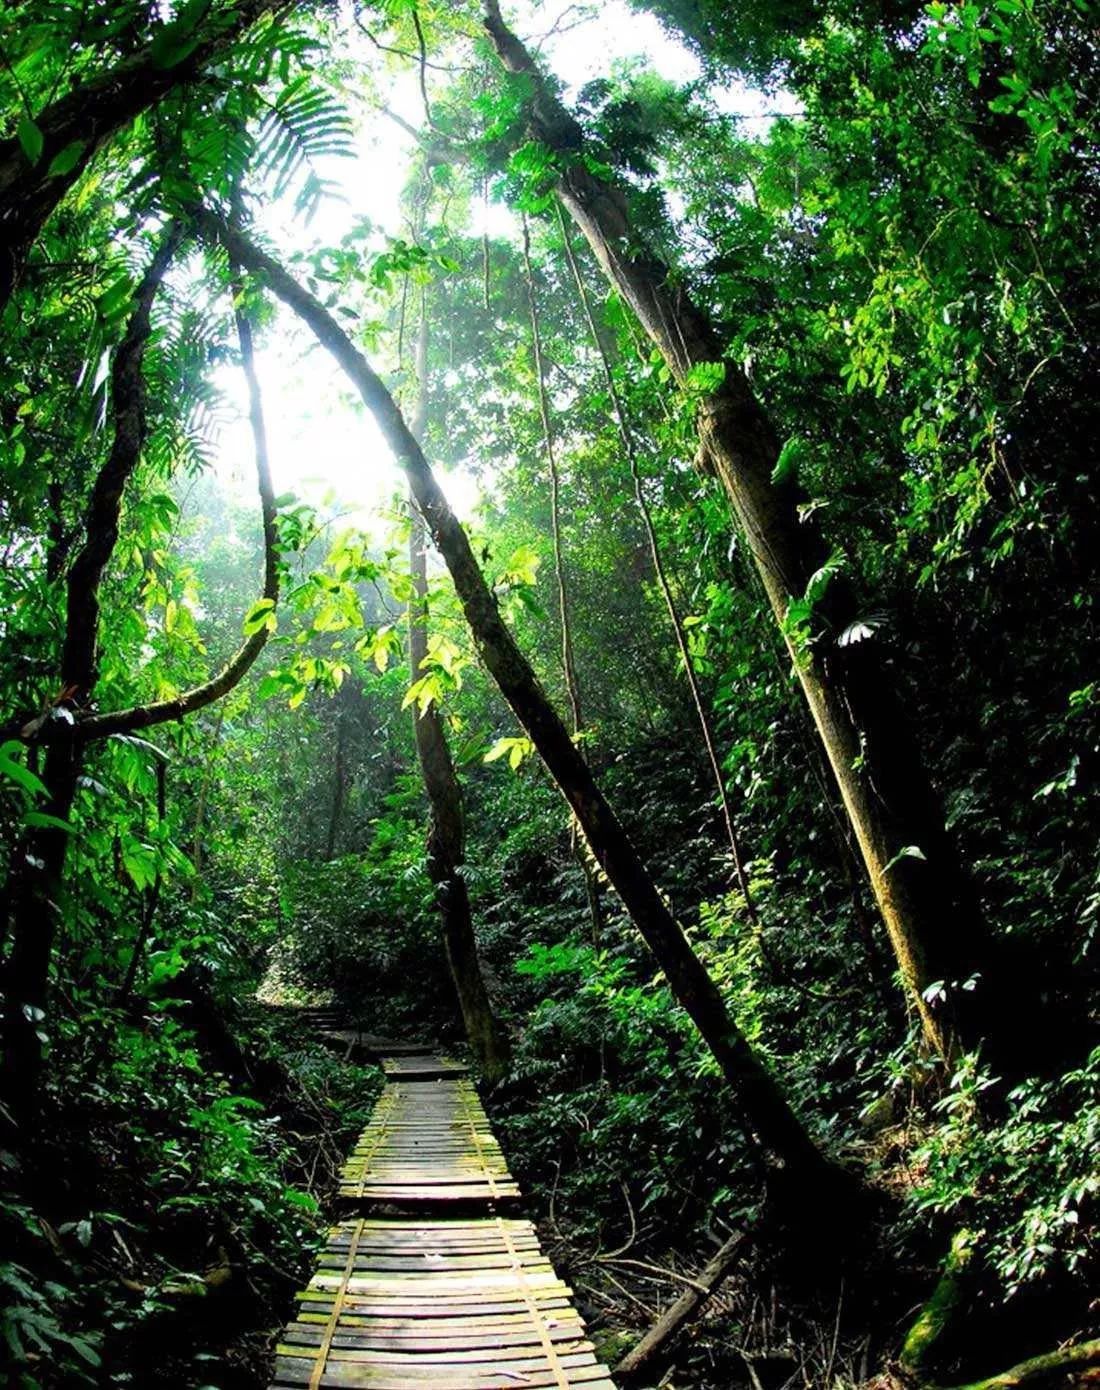 地处云南南端的西双版纳热带雨林是当今高纬度,高海拔地带保存最